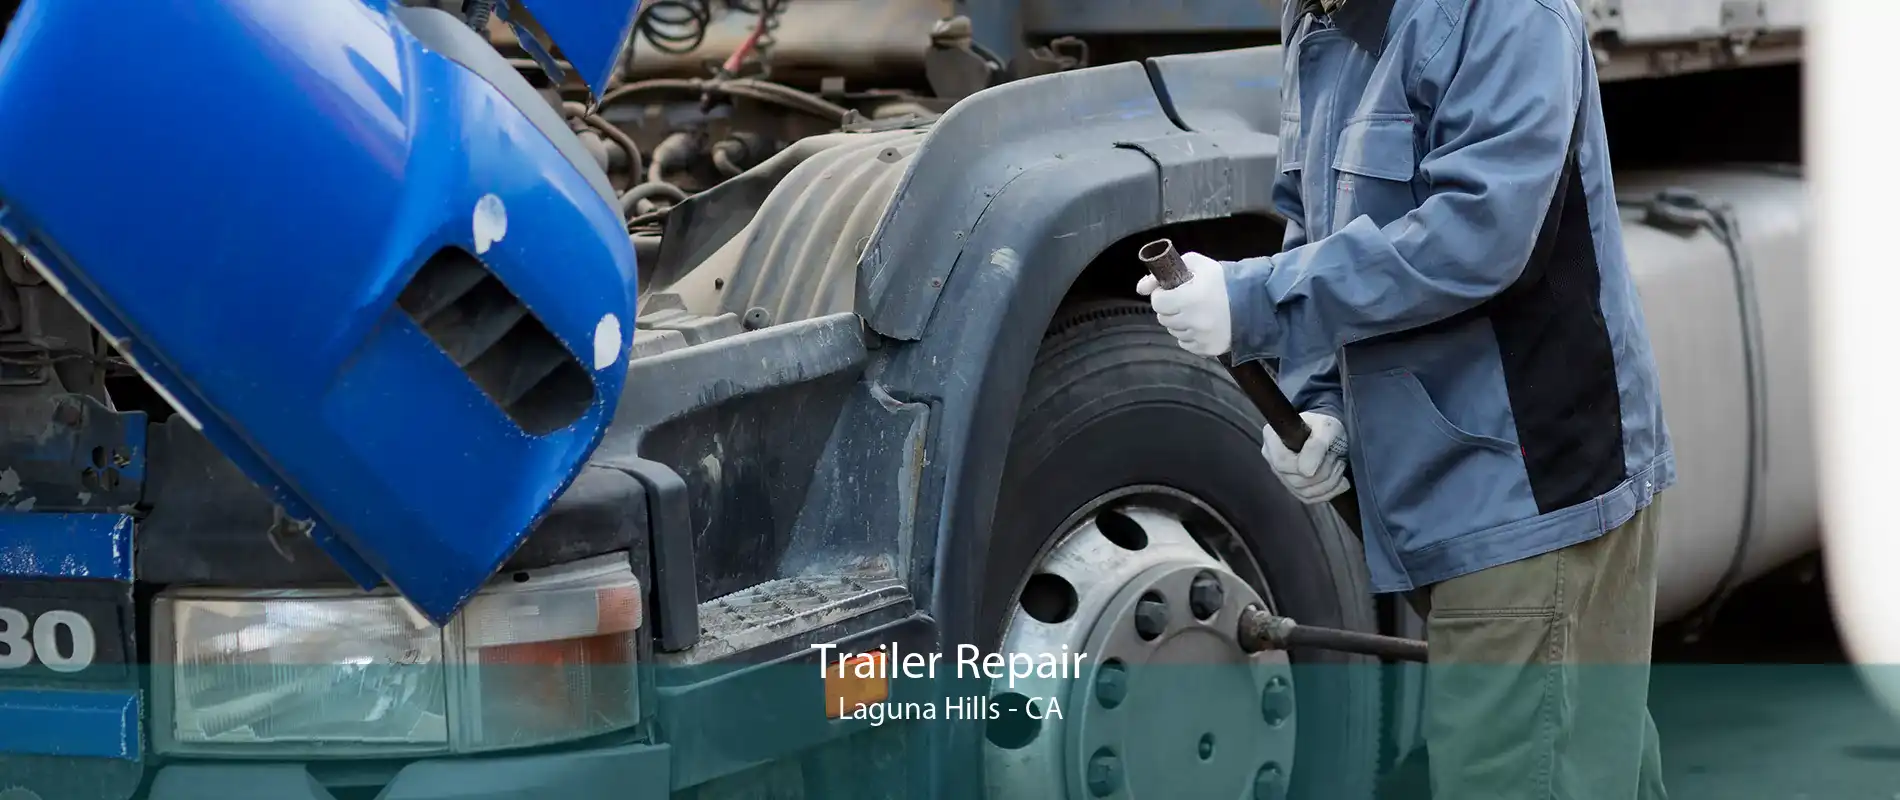 Trailer Repair Laguna Hills - CA